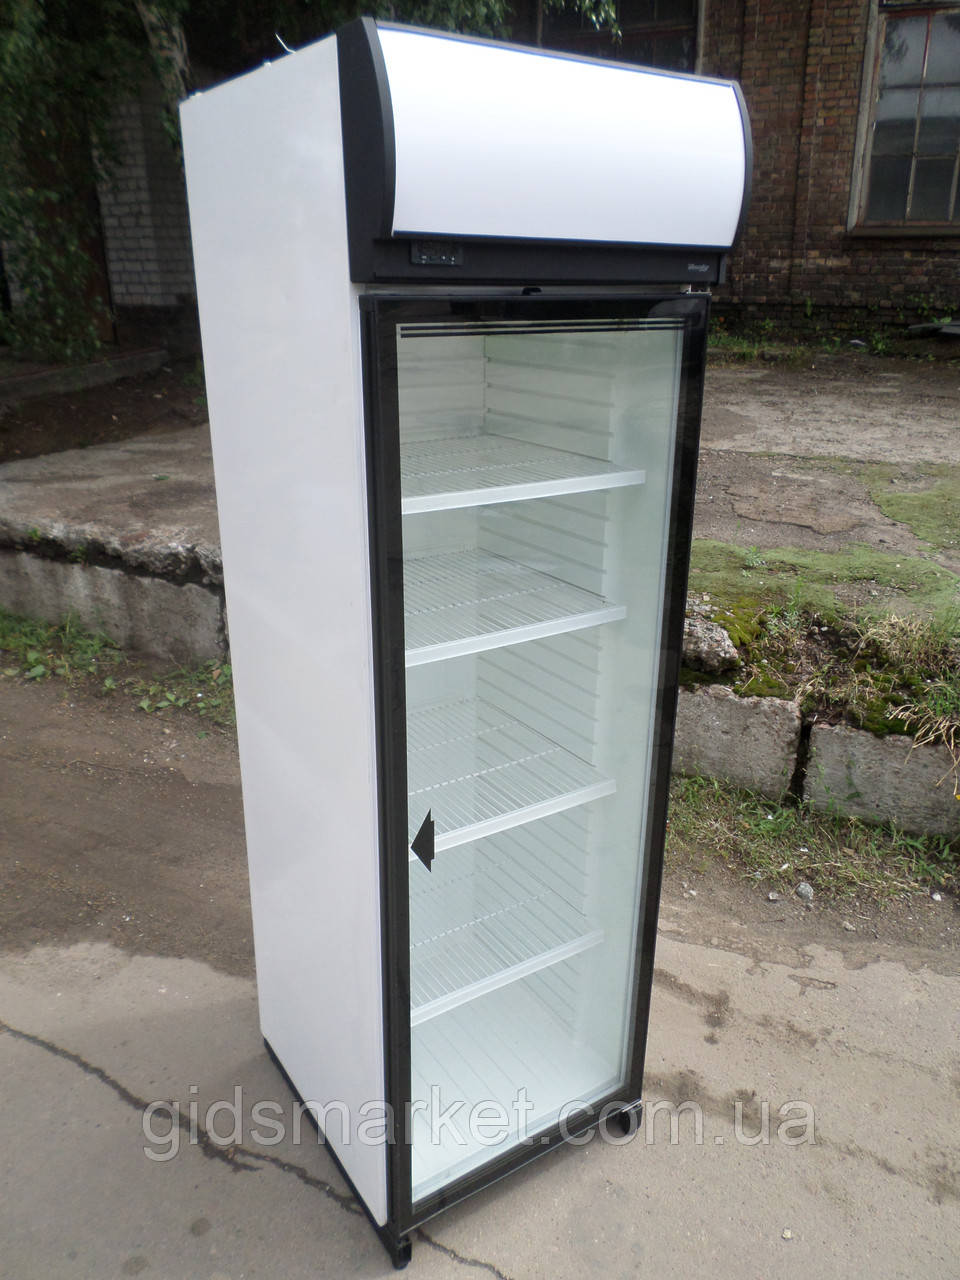  Холодильна шафа однодверна Derbi 370 л. б/у, купити шафу холодильний бу